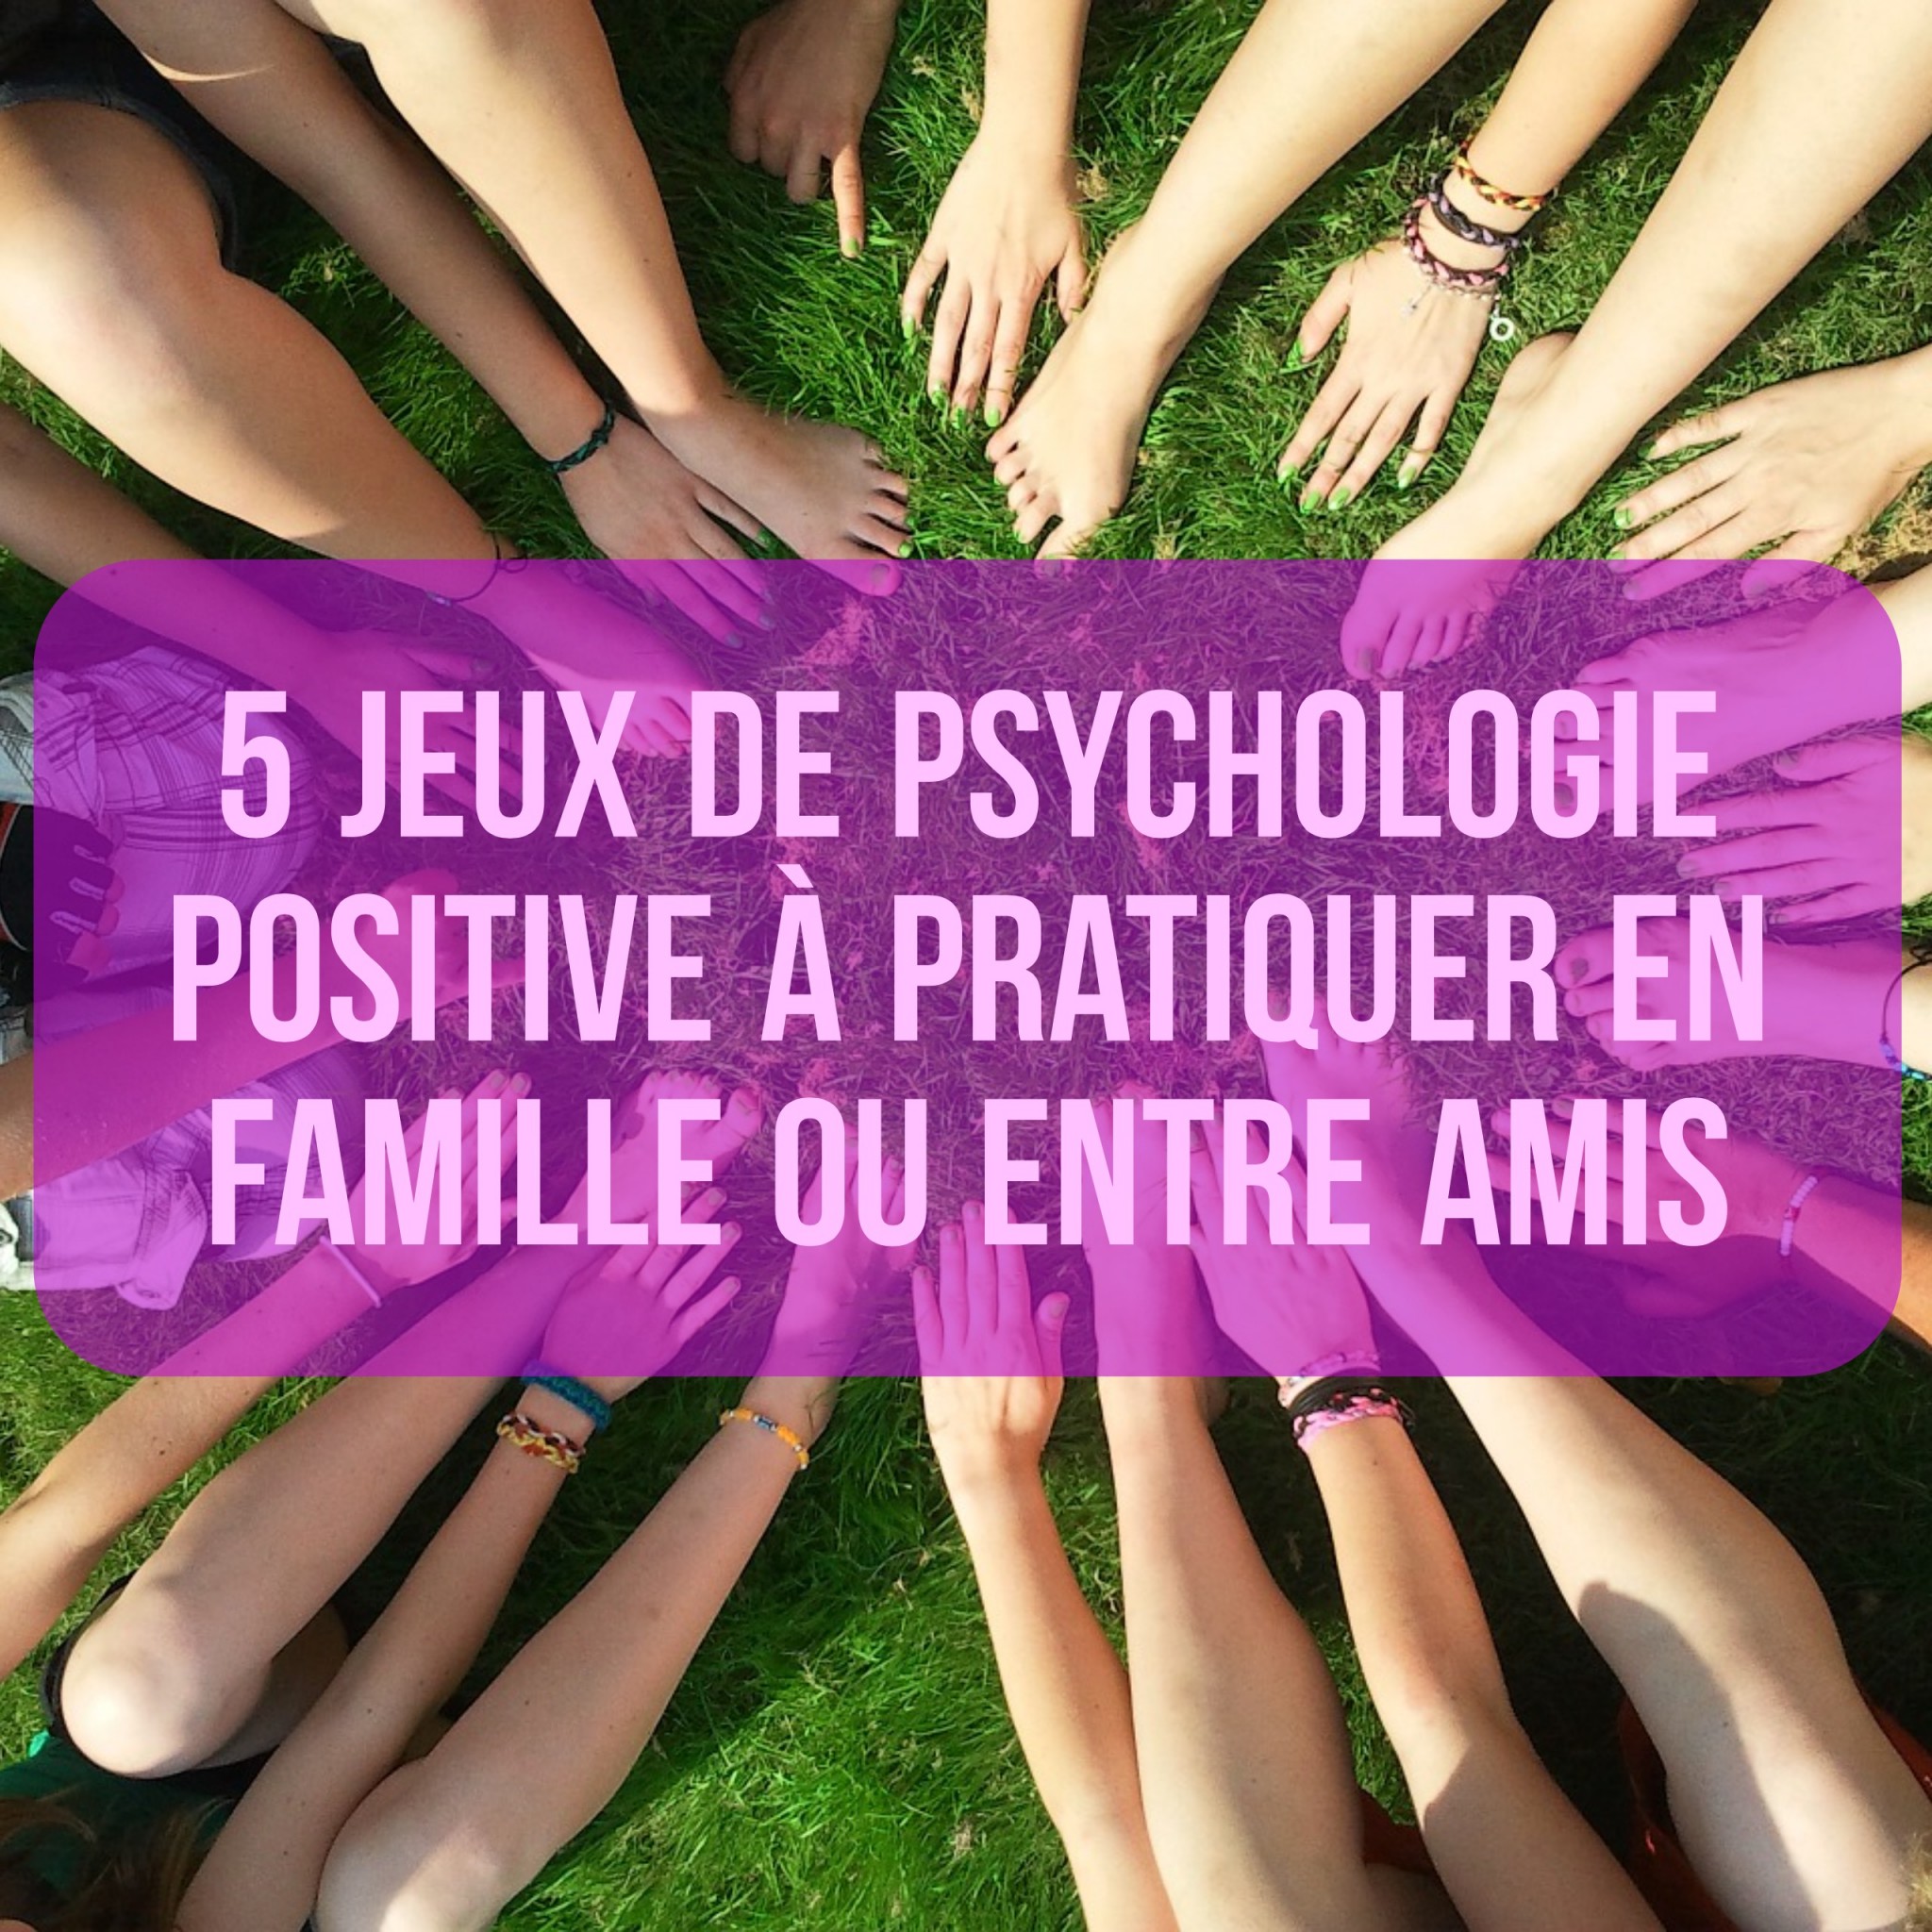 5 jeux de psychologie positive à pratiquer en famille